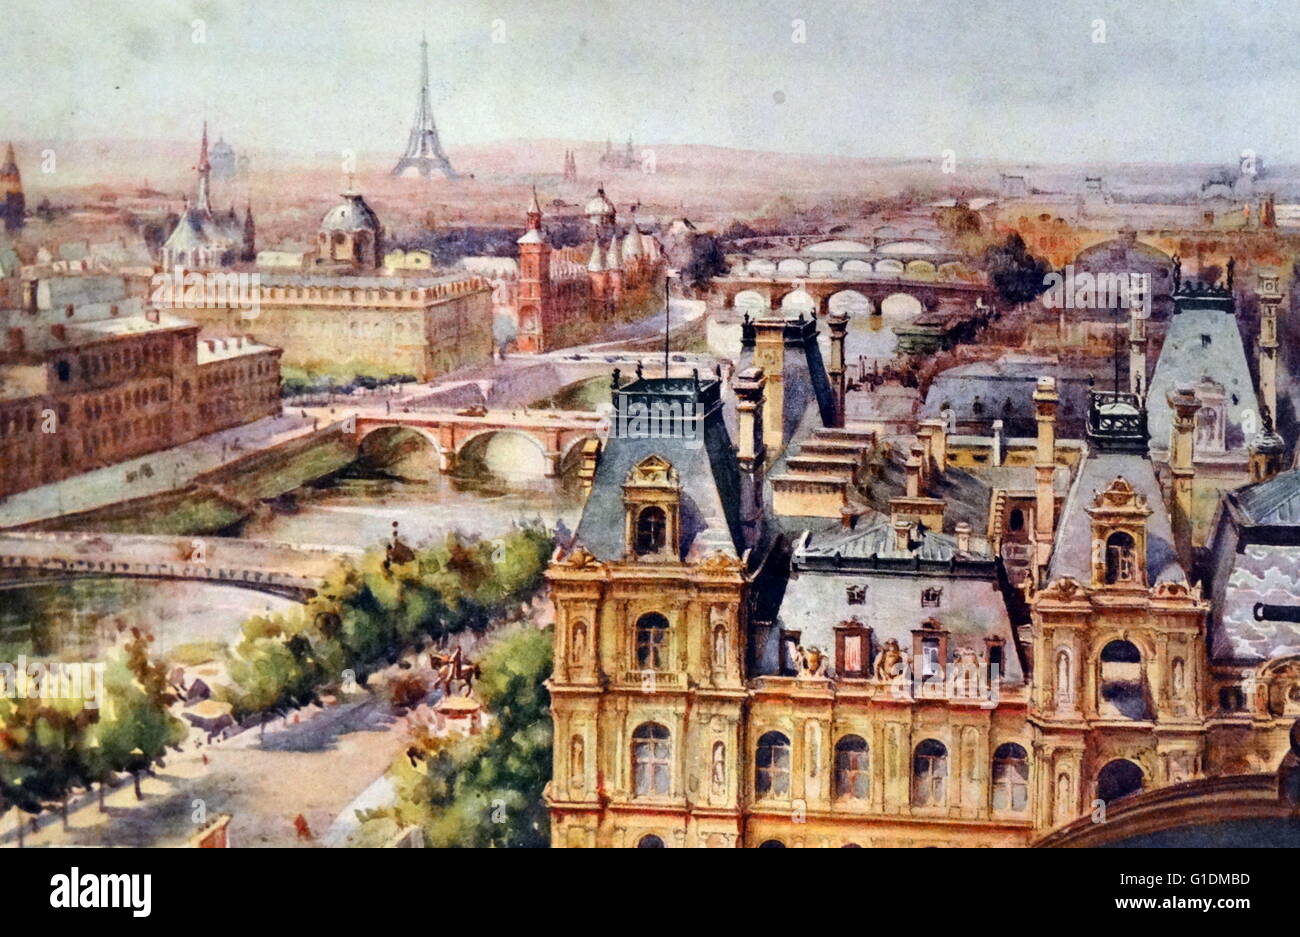 ▷ Painting PARIS, LA SEINE AU PONT NEUF by Euger